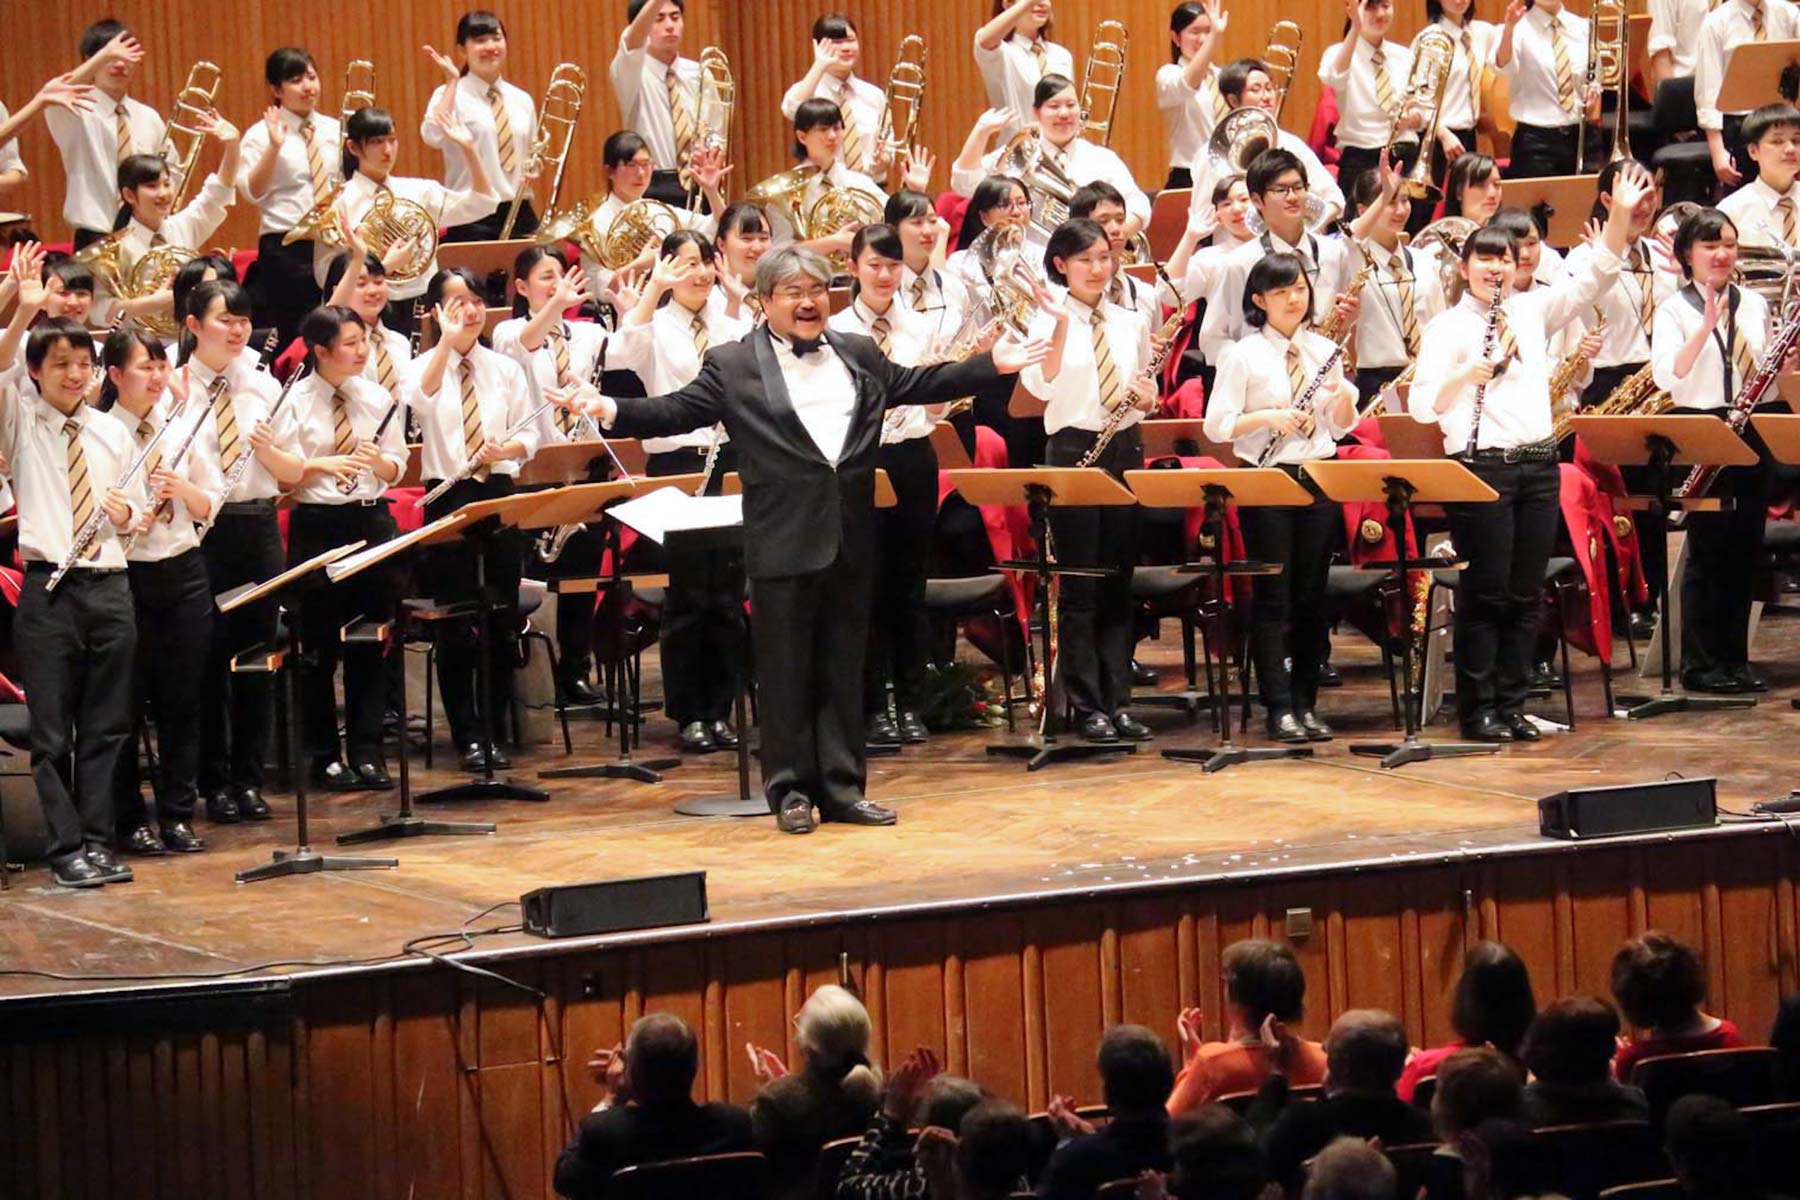 Concert of Japanese ochestra